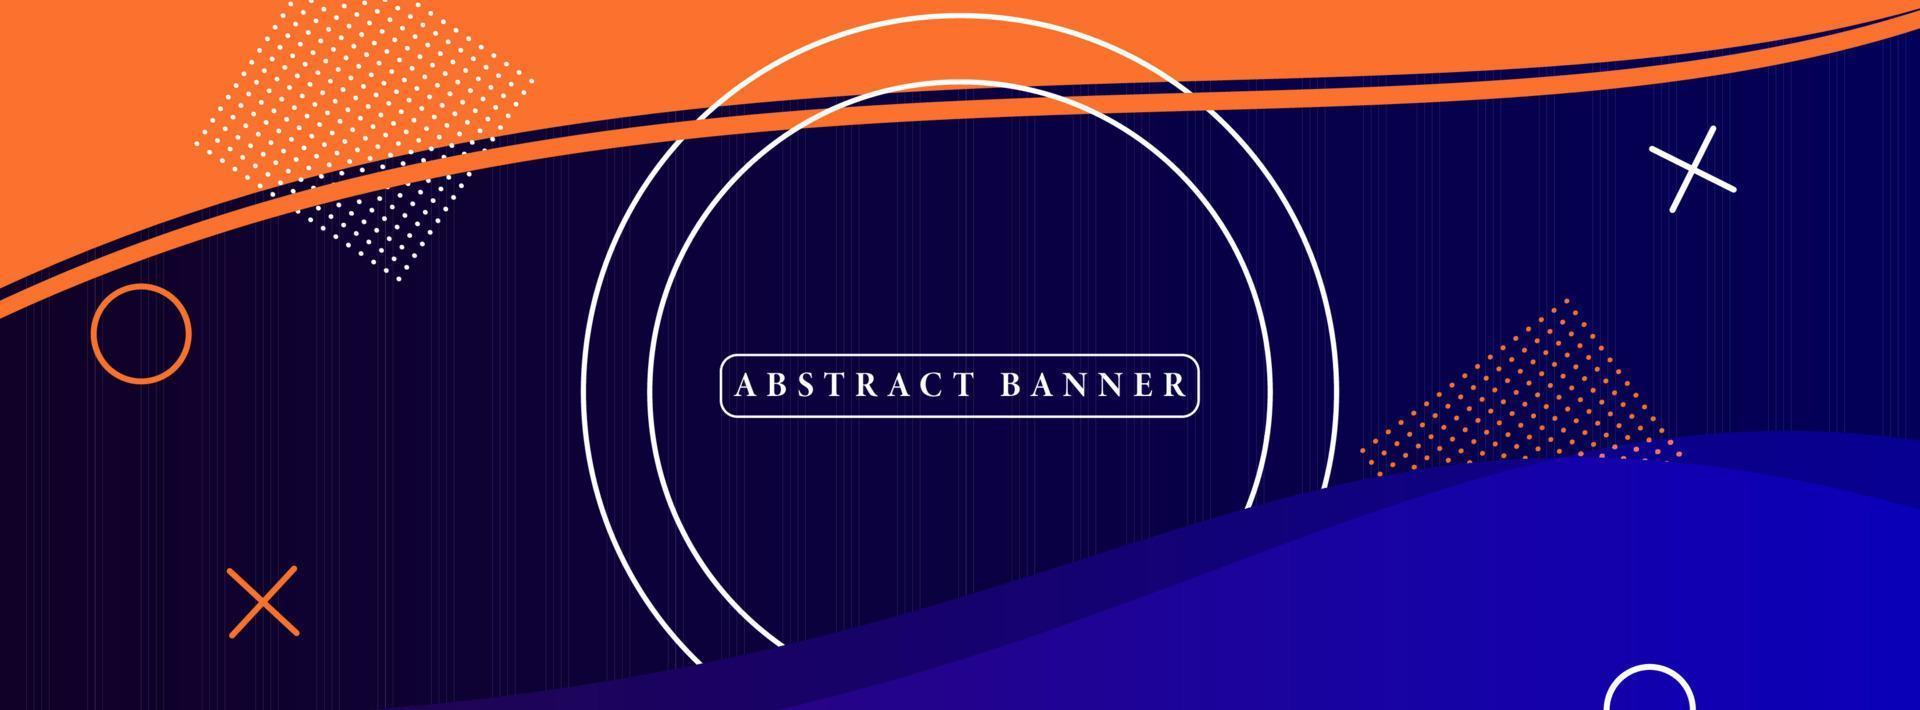 banner astratto ampio creativo creato con forme geometriche semplici vettore